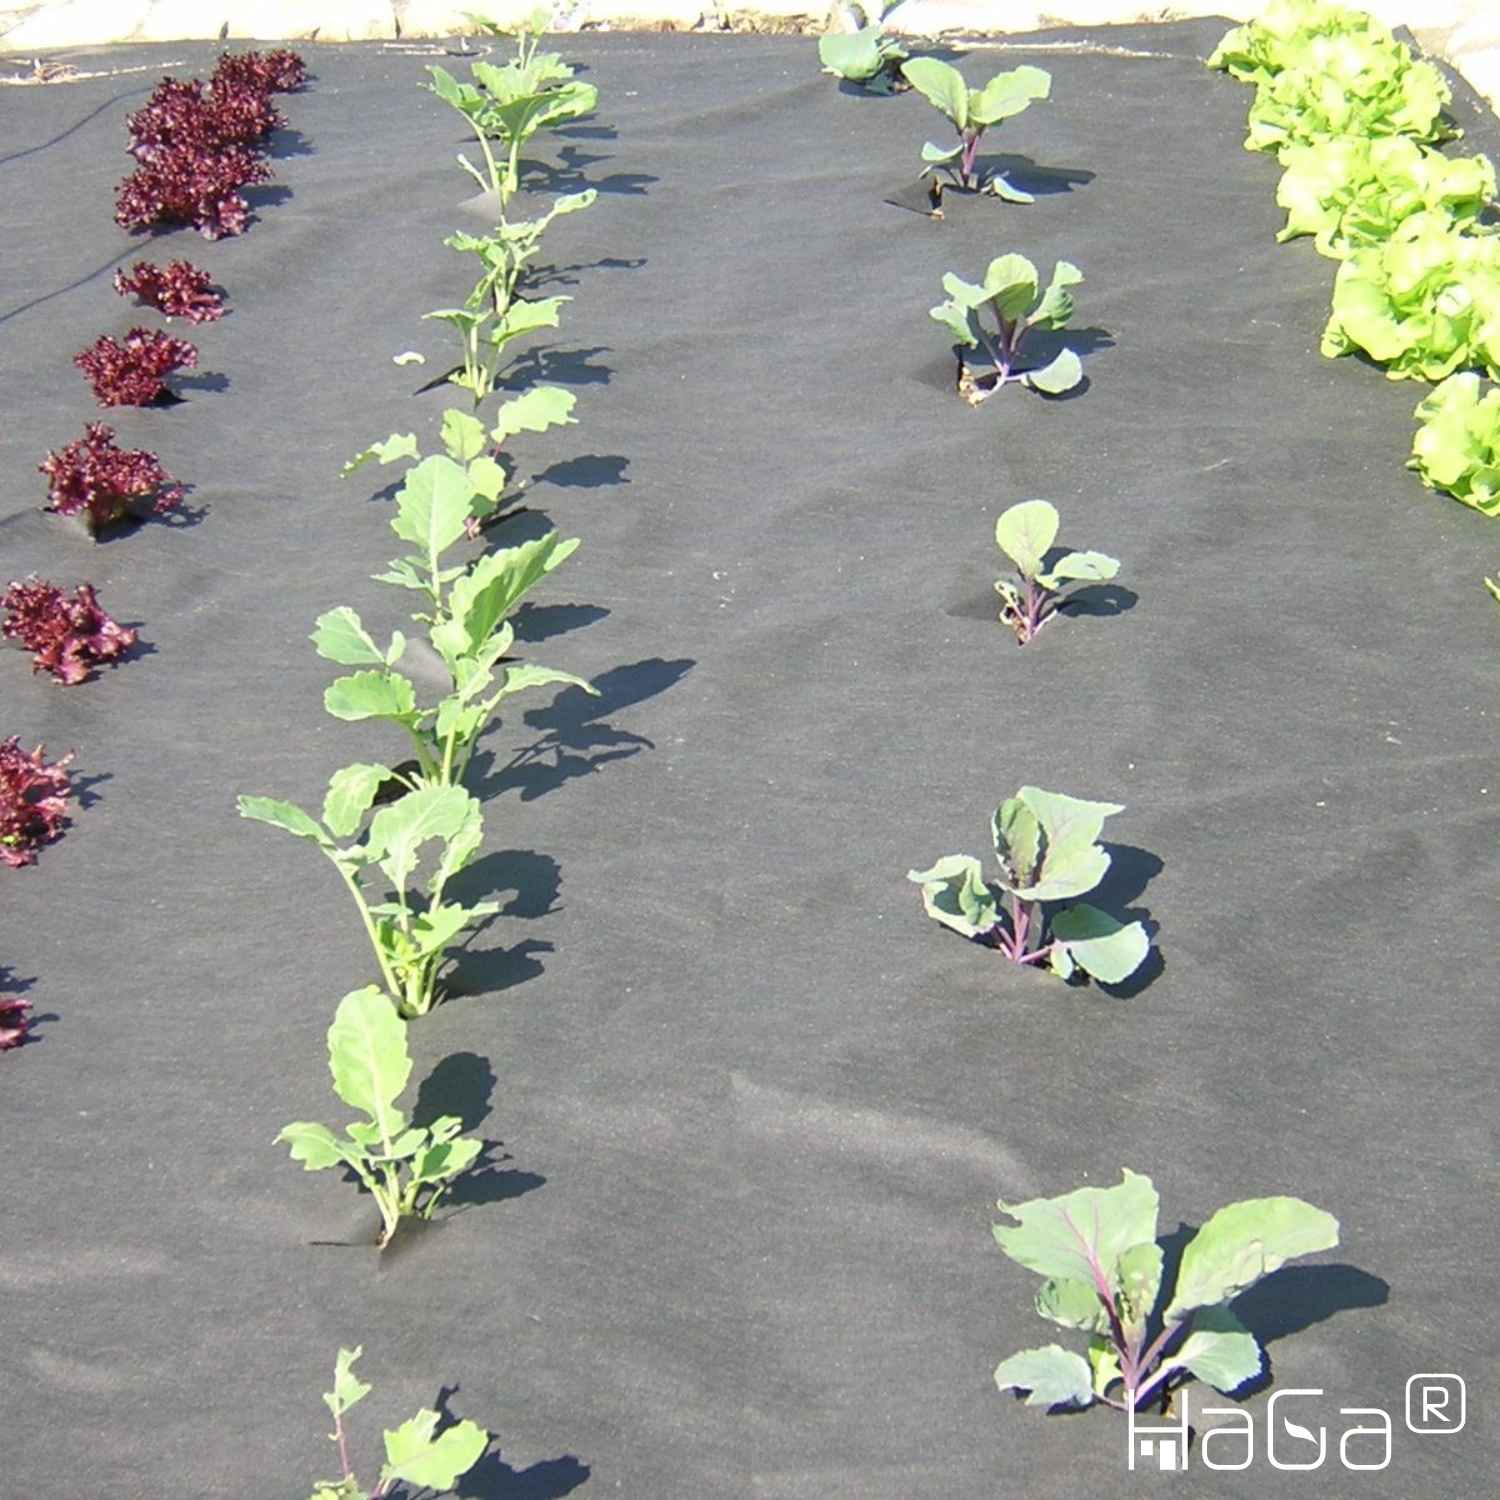 HaGa® Gartenvlies (Meterware) Unkrautvlies für Gemüsebeet 50g/m² in 0,8m x 1m